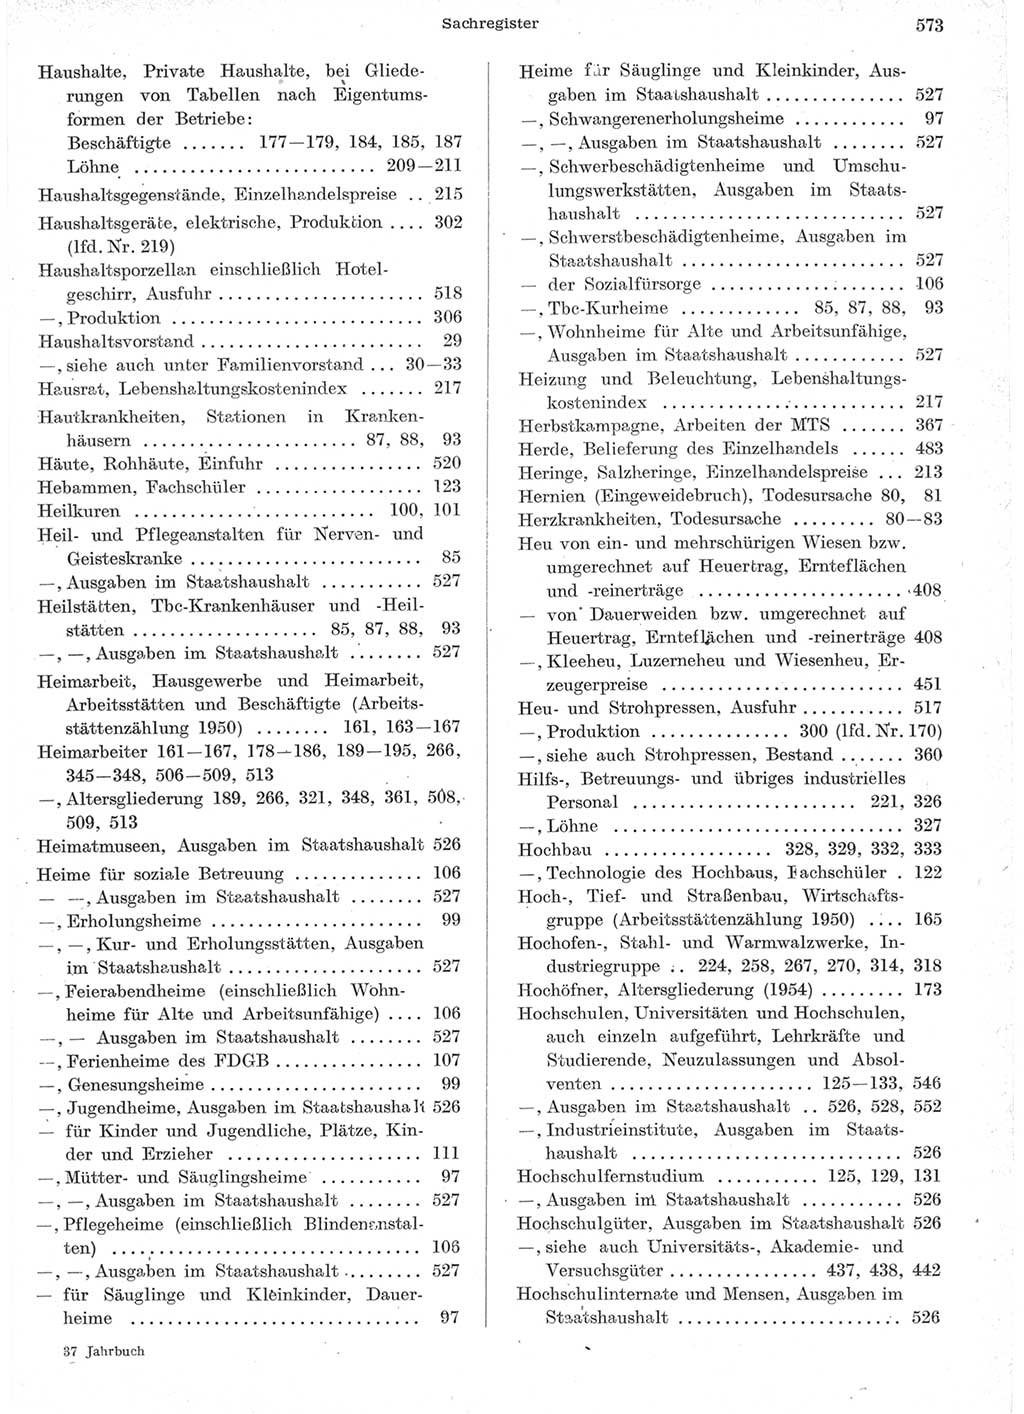 Statistisches Jahrbuch der Deutschen Demokratischen Republik (DDR) 1957, Seite 573 (Stat. Jb. DDR 1957, S. 573)